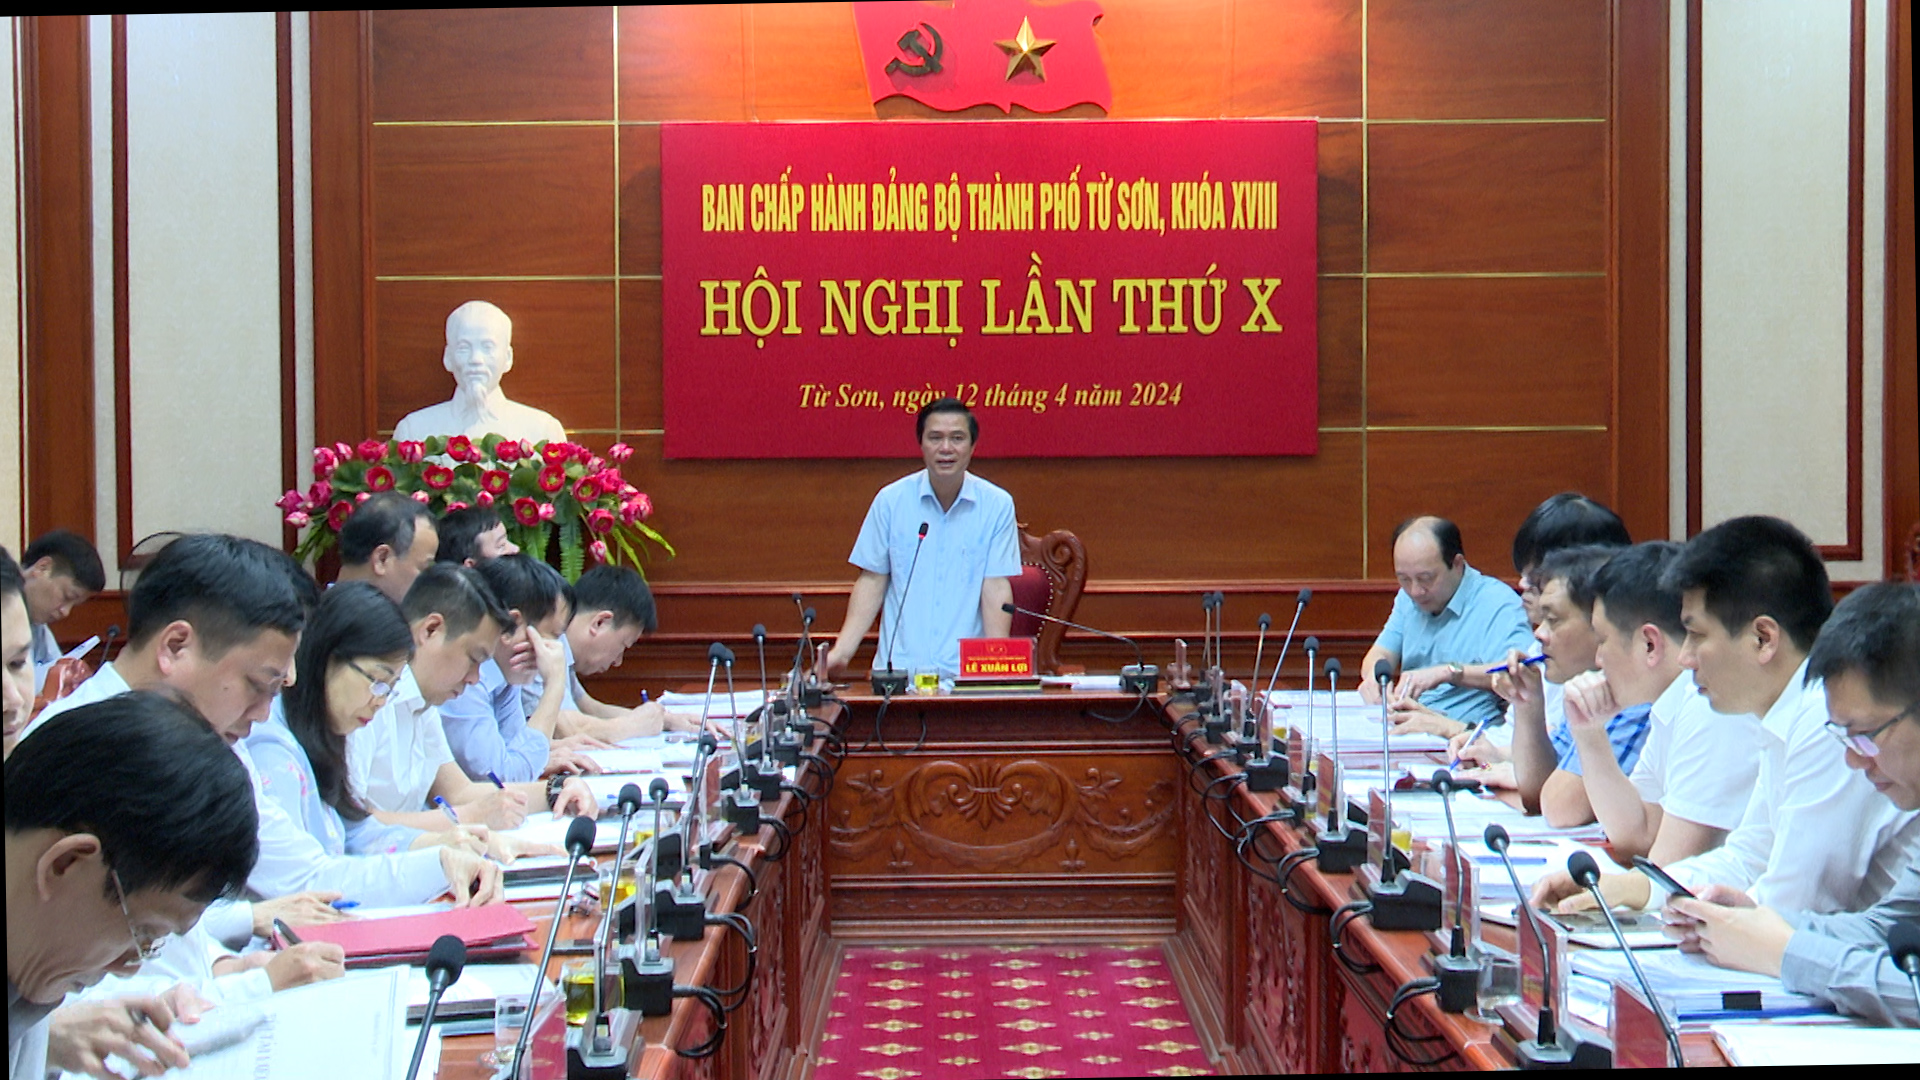 Hội nghị lần thứ 10 BCH Đảng bộ thành phố Từ Sơn khoá XVIII